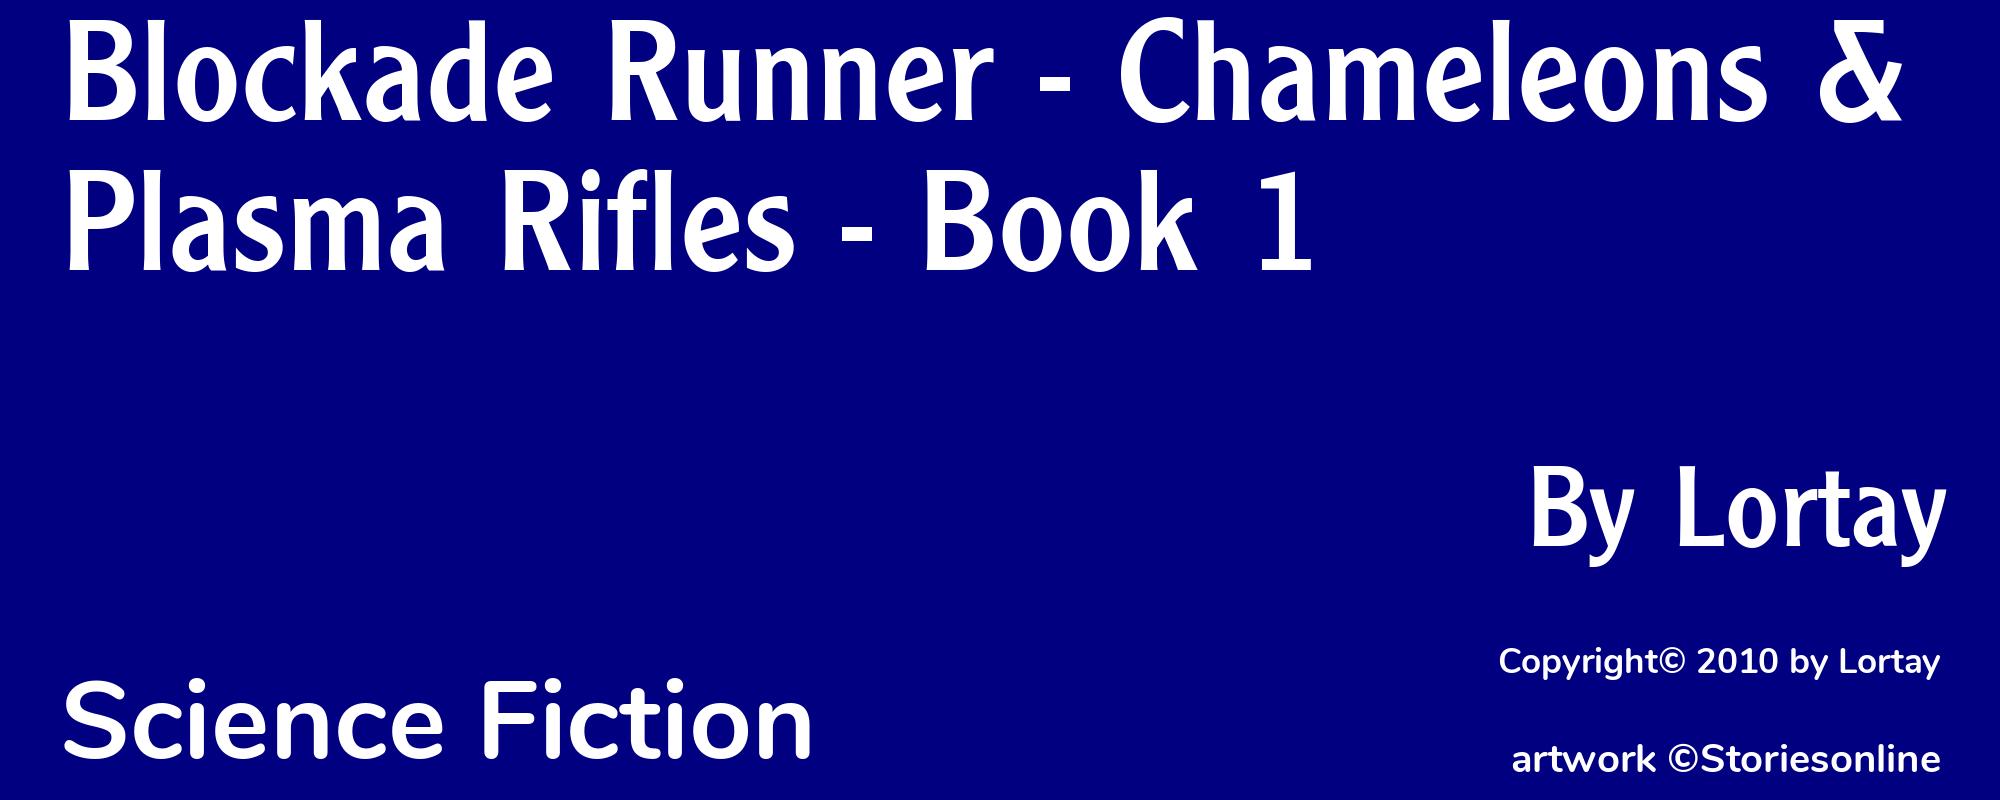 Blockade Runner - Chameleons & Plasma Rifles - Book 1 - Cover